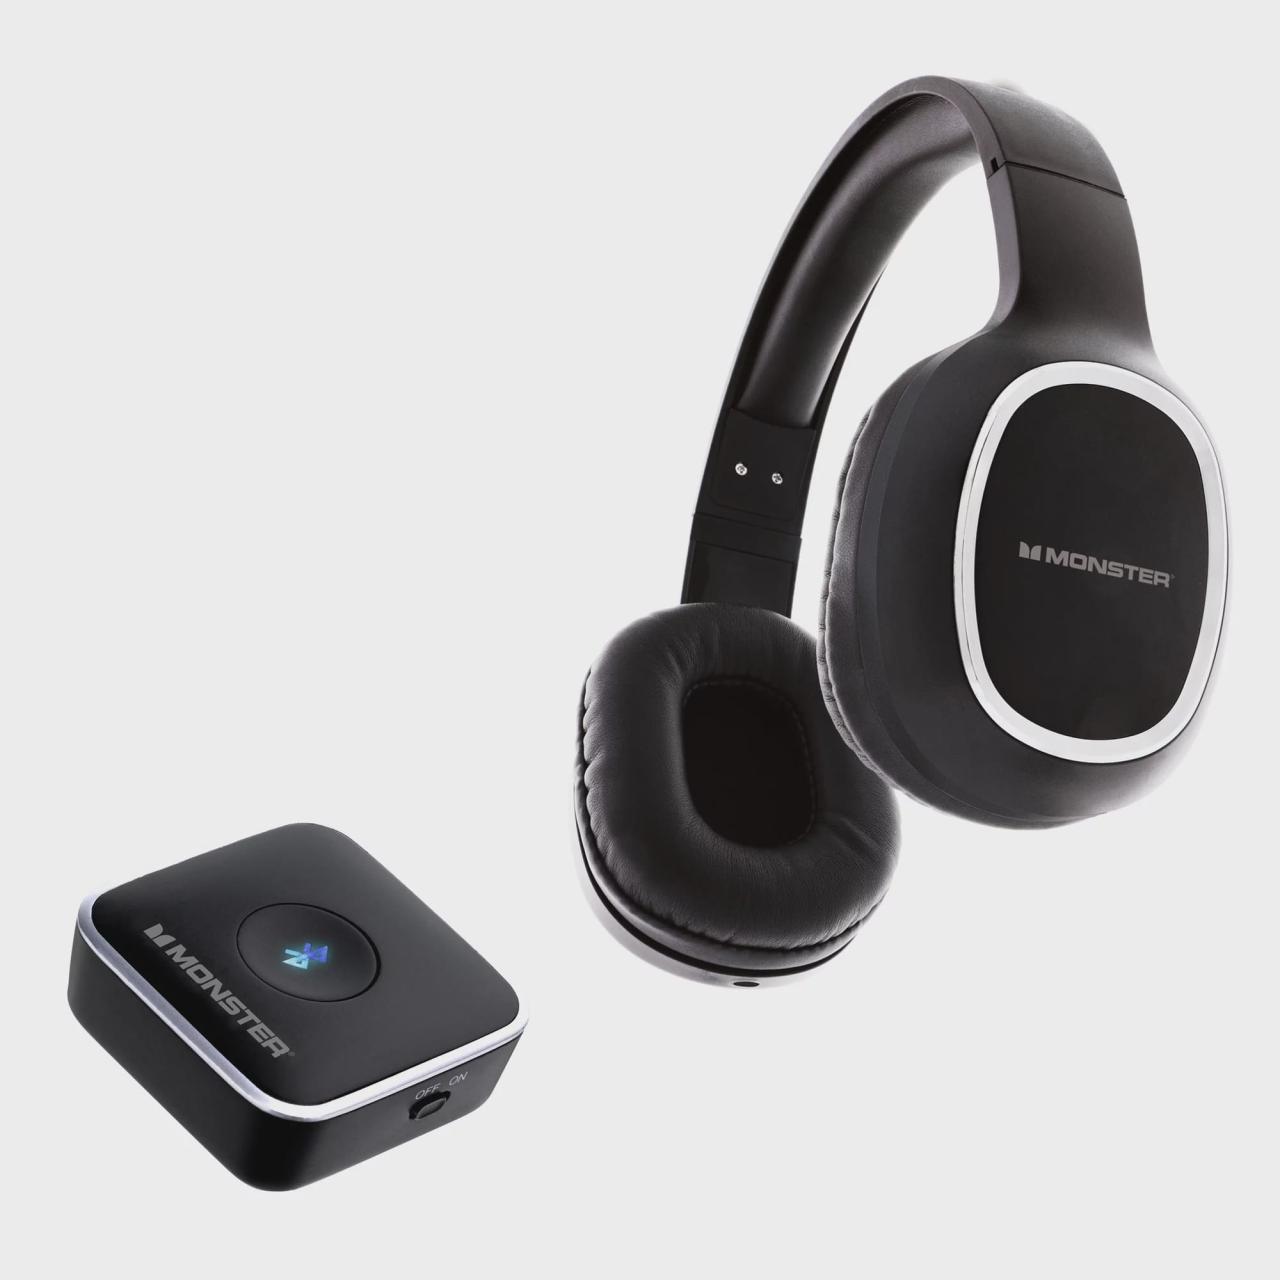 monster hdtv wireless headphones kit review